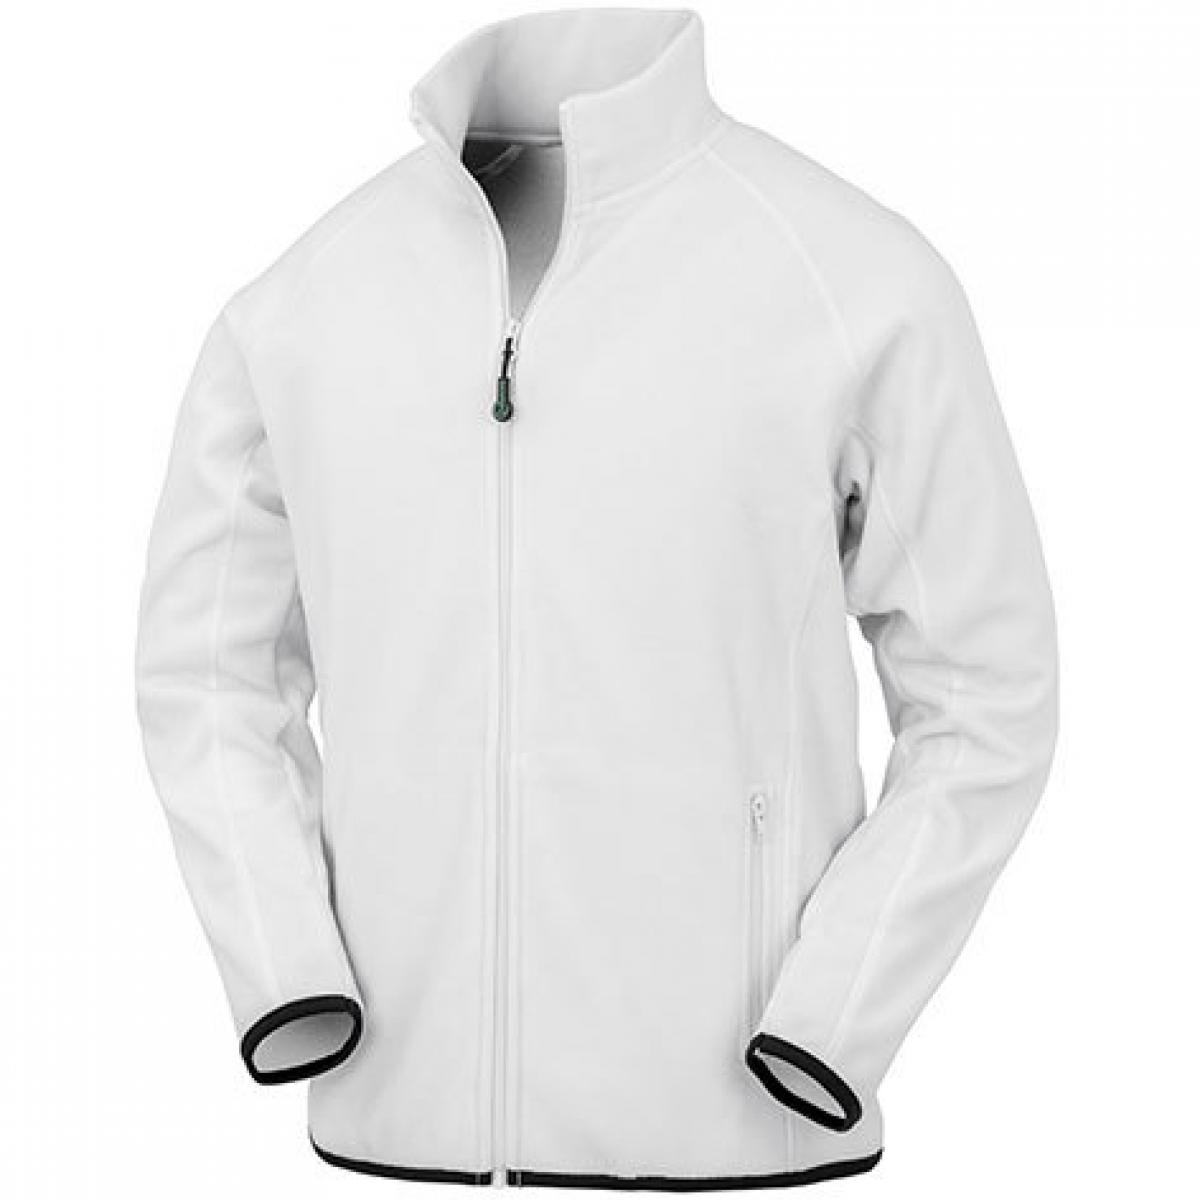 Hersteller: Result Genuine Recycled Herstellernummer: R903X Artikelbezeichnung: Recycled Fleece Polarthermic Jacket Farbe: White